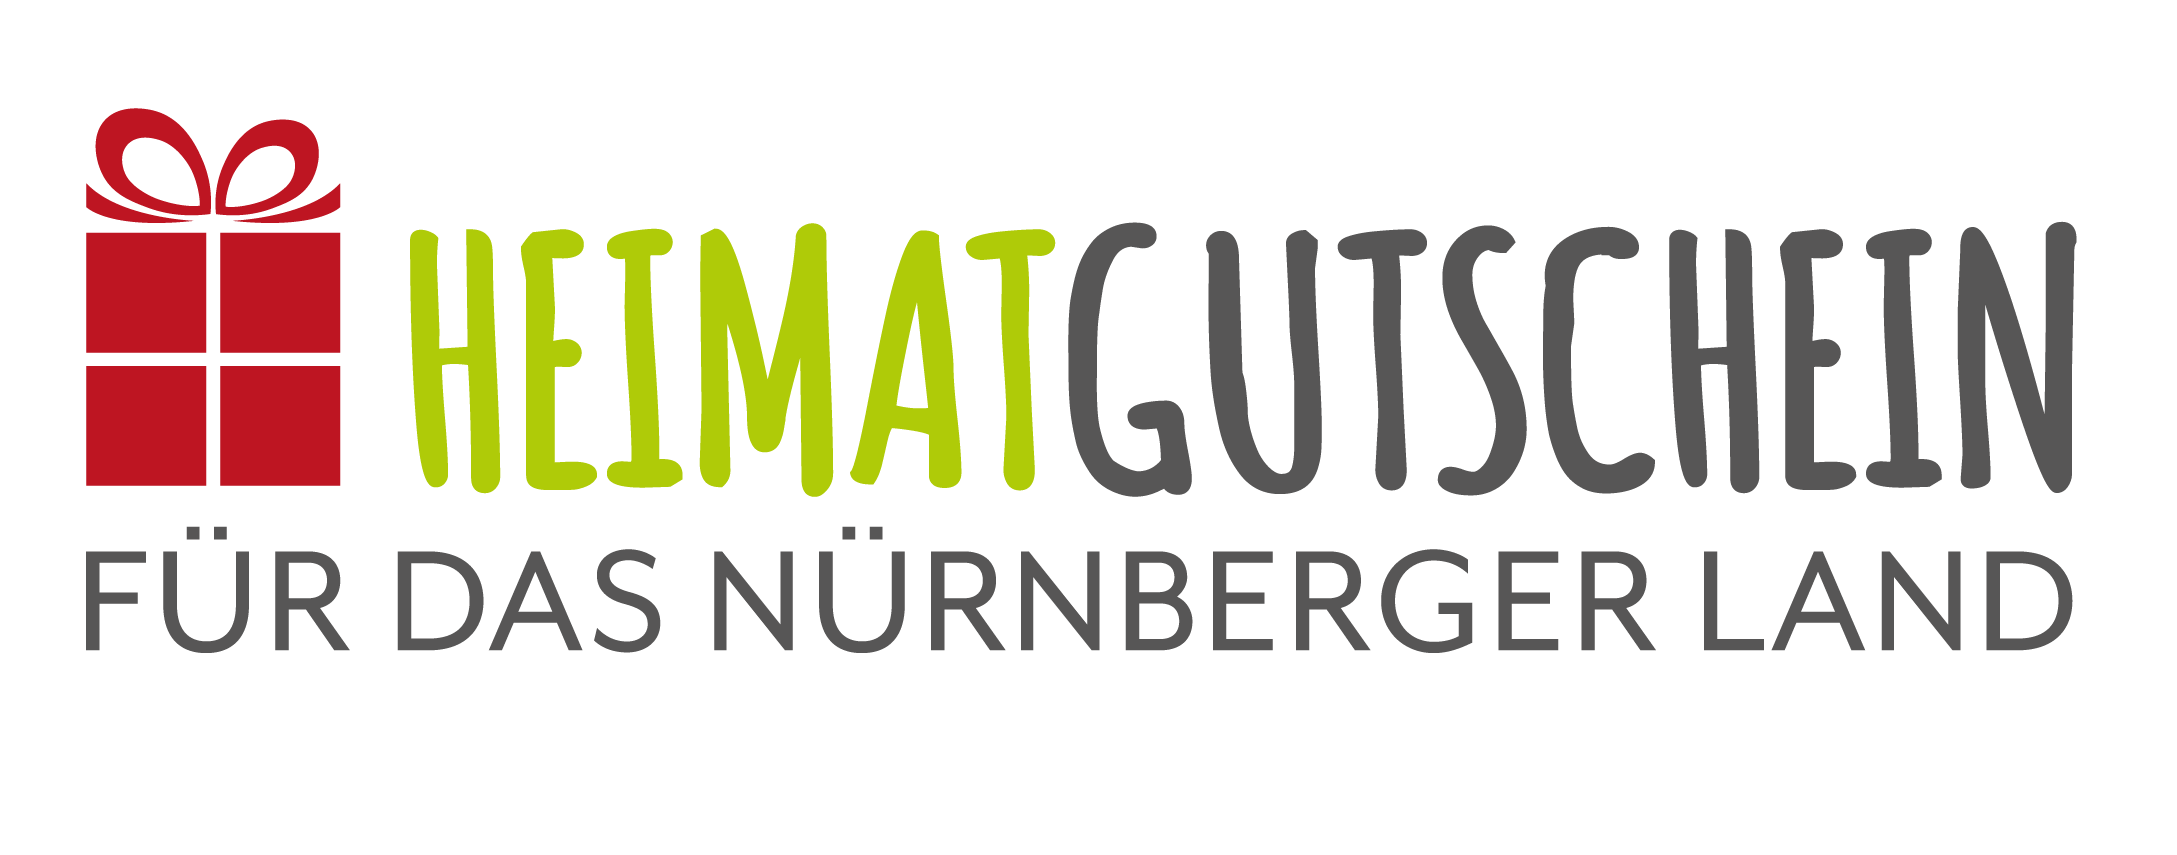 Logo Heimatgutschein für das Nürnberger Land